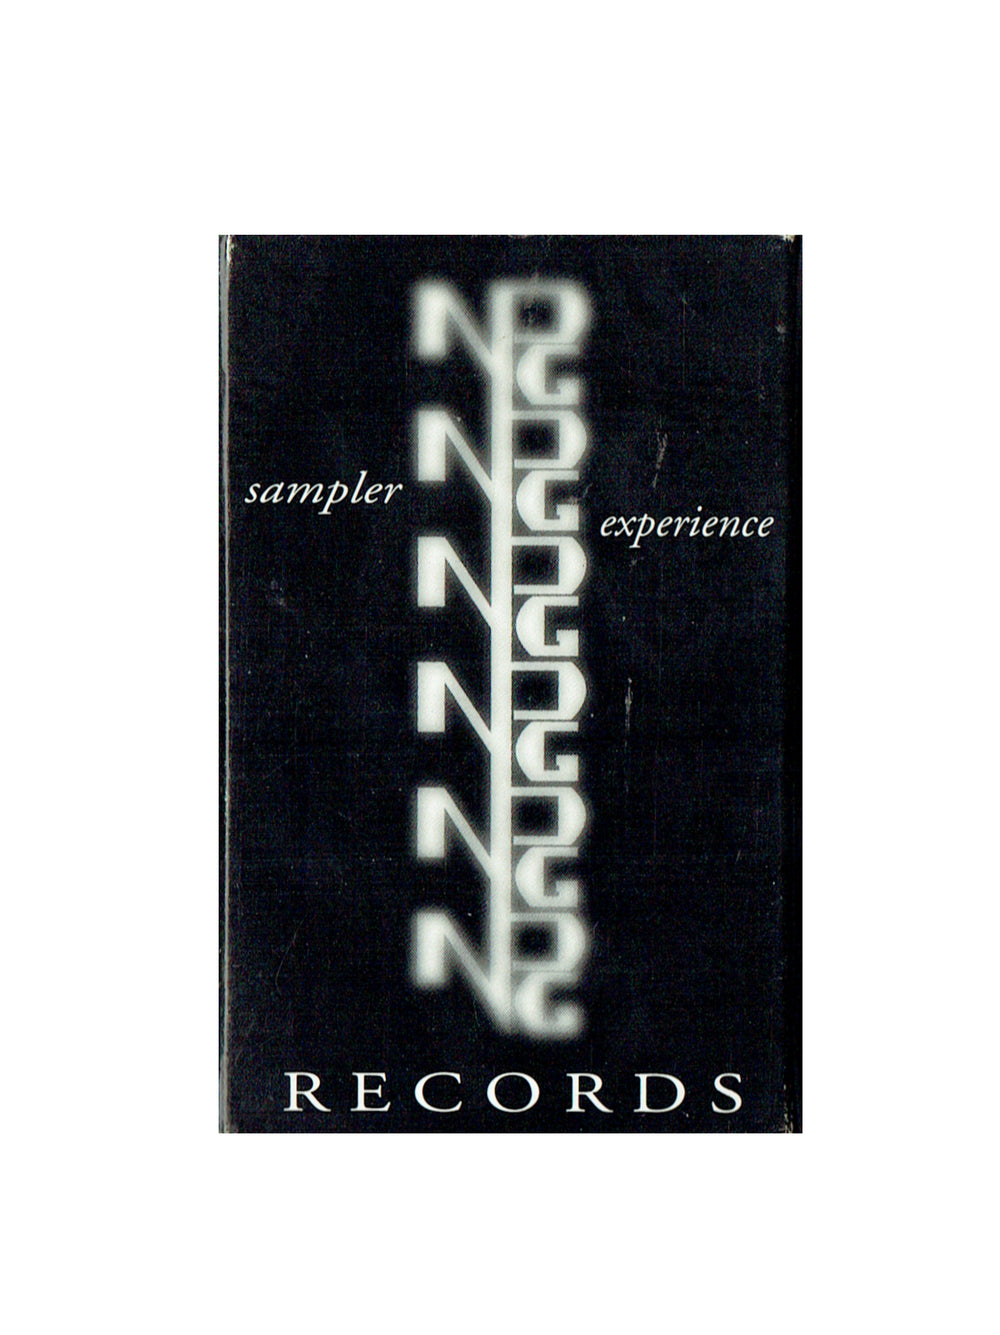 Prince – NPG Sampler Experience Cassette Album US NPG Preloved: 1995